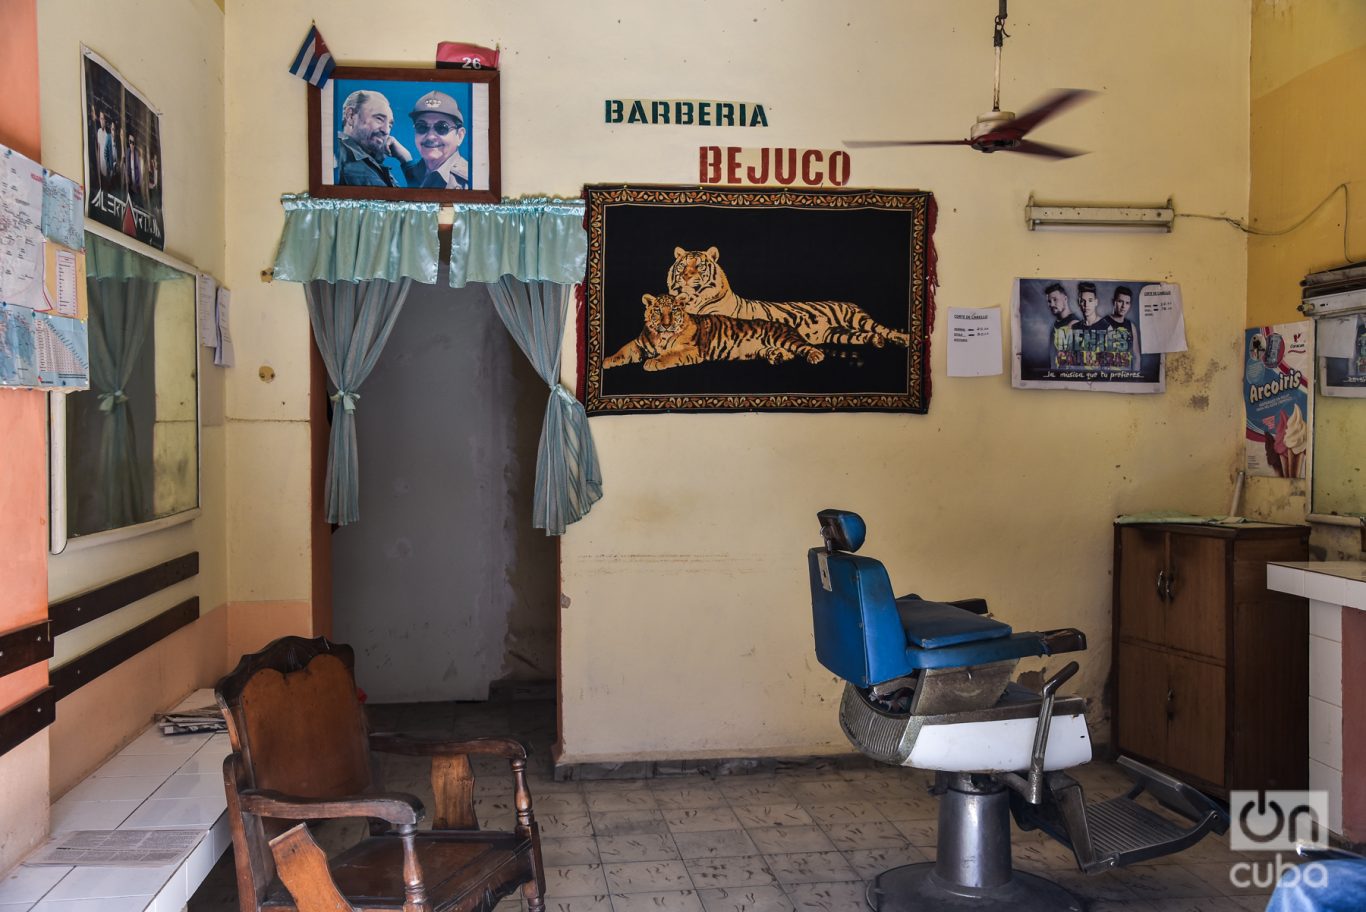 Barbería “Bejuco”, donde regularmente me cortaba el pelo.
